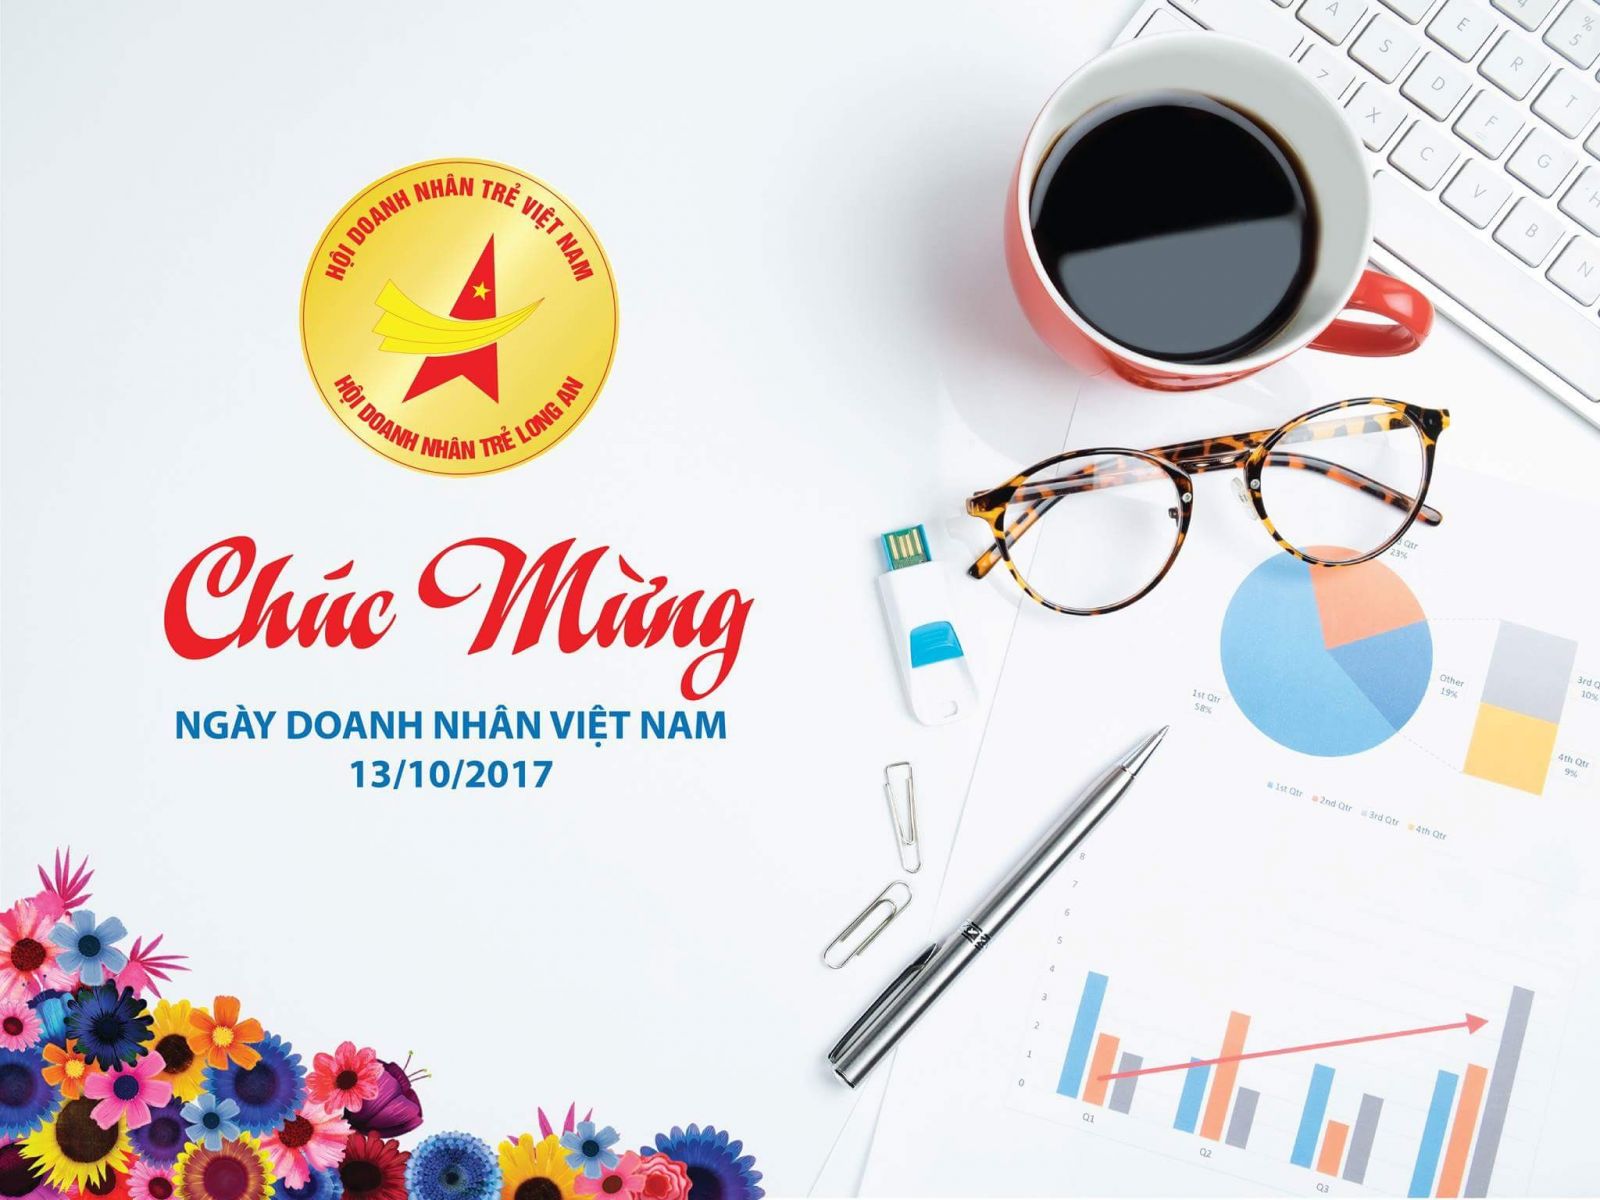 Chúc mừng ngày doanh nhân Việt Nam 13/10/2017